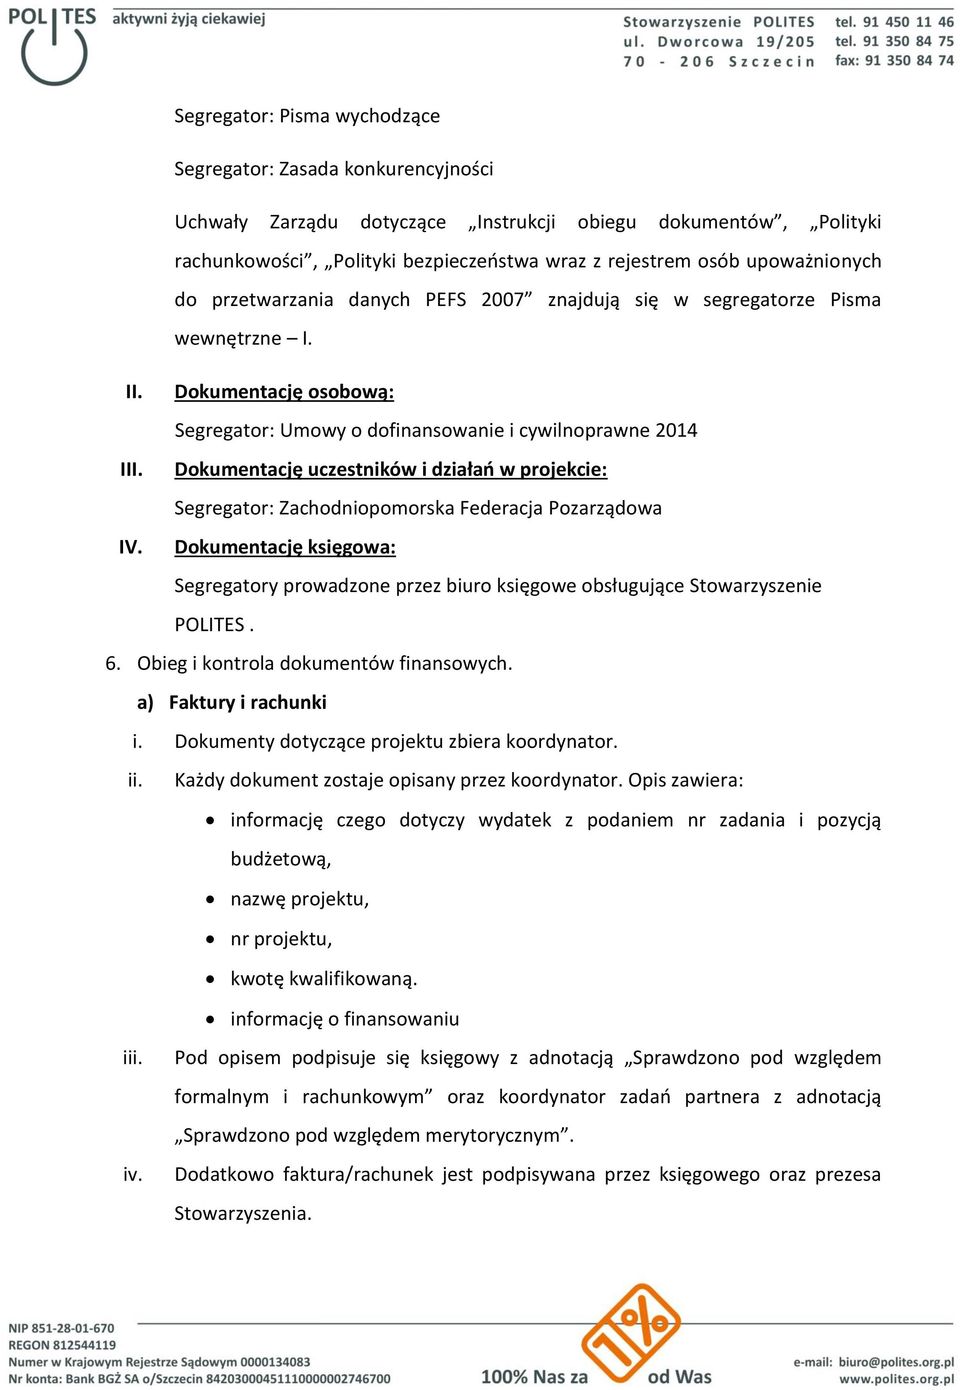 Dokumentację uczestników i działań w projekcie: Segregator: Zachodniopomorska Federacja Pozarządowa IV.